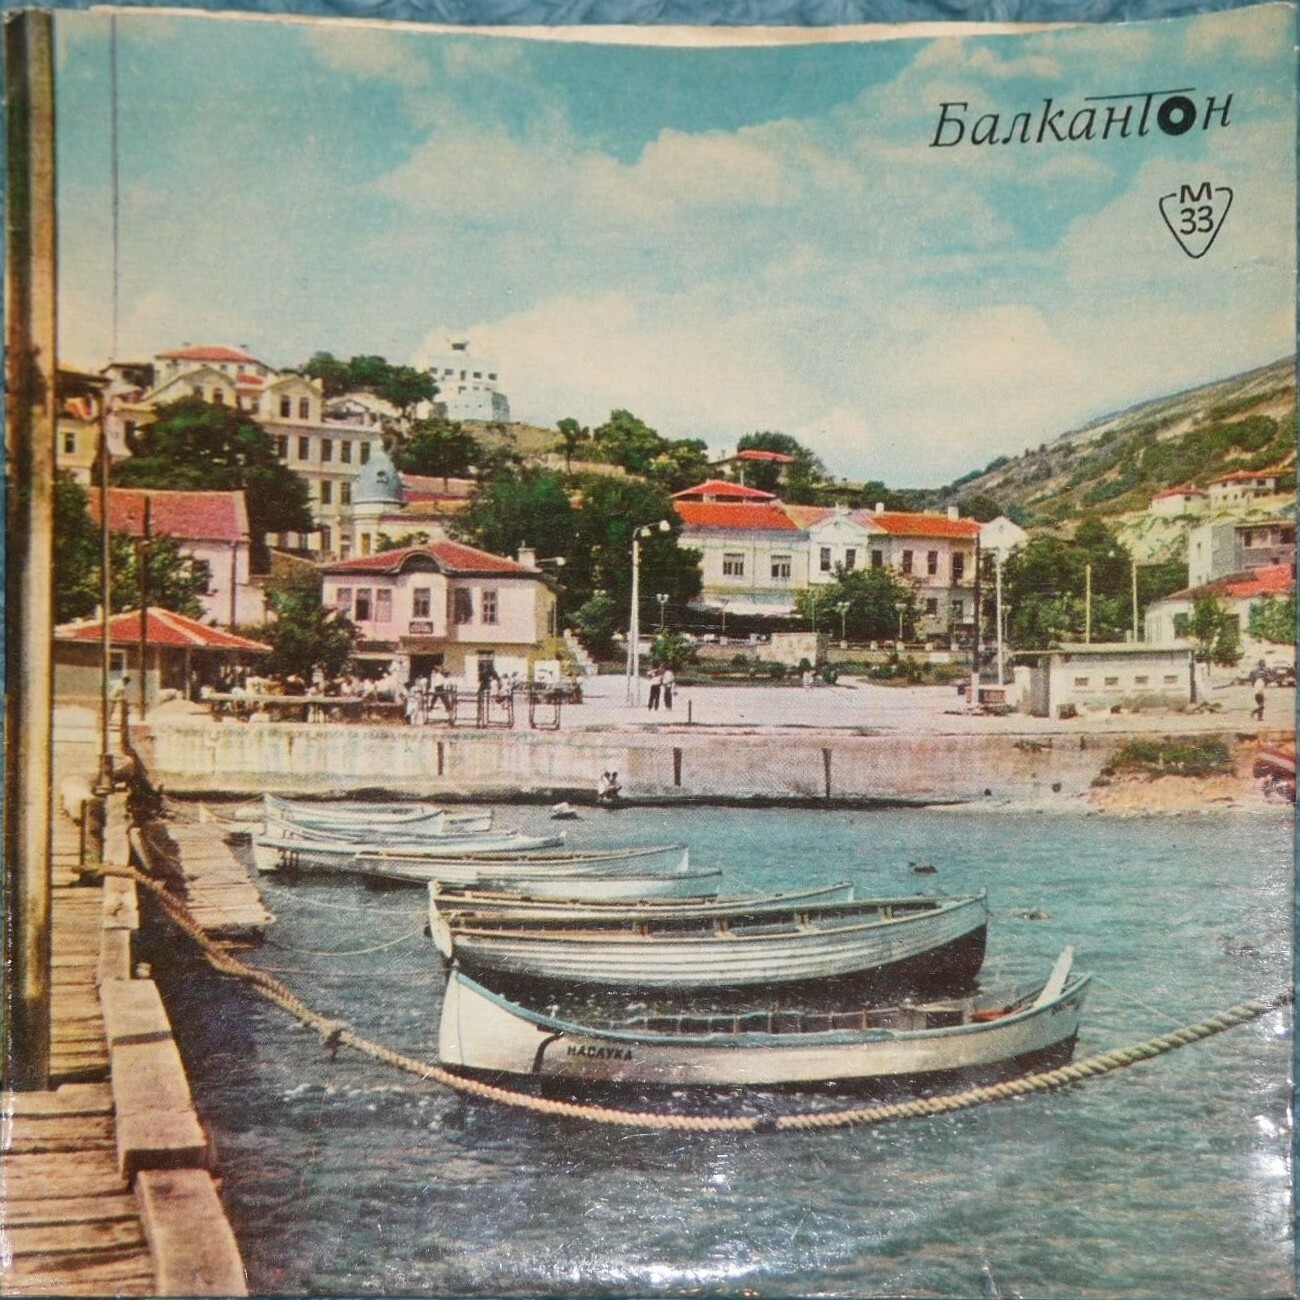 Премирани песни за българского Черноморие - 1966 г.